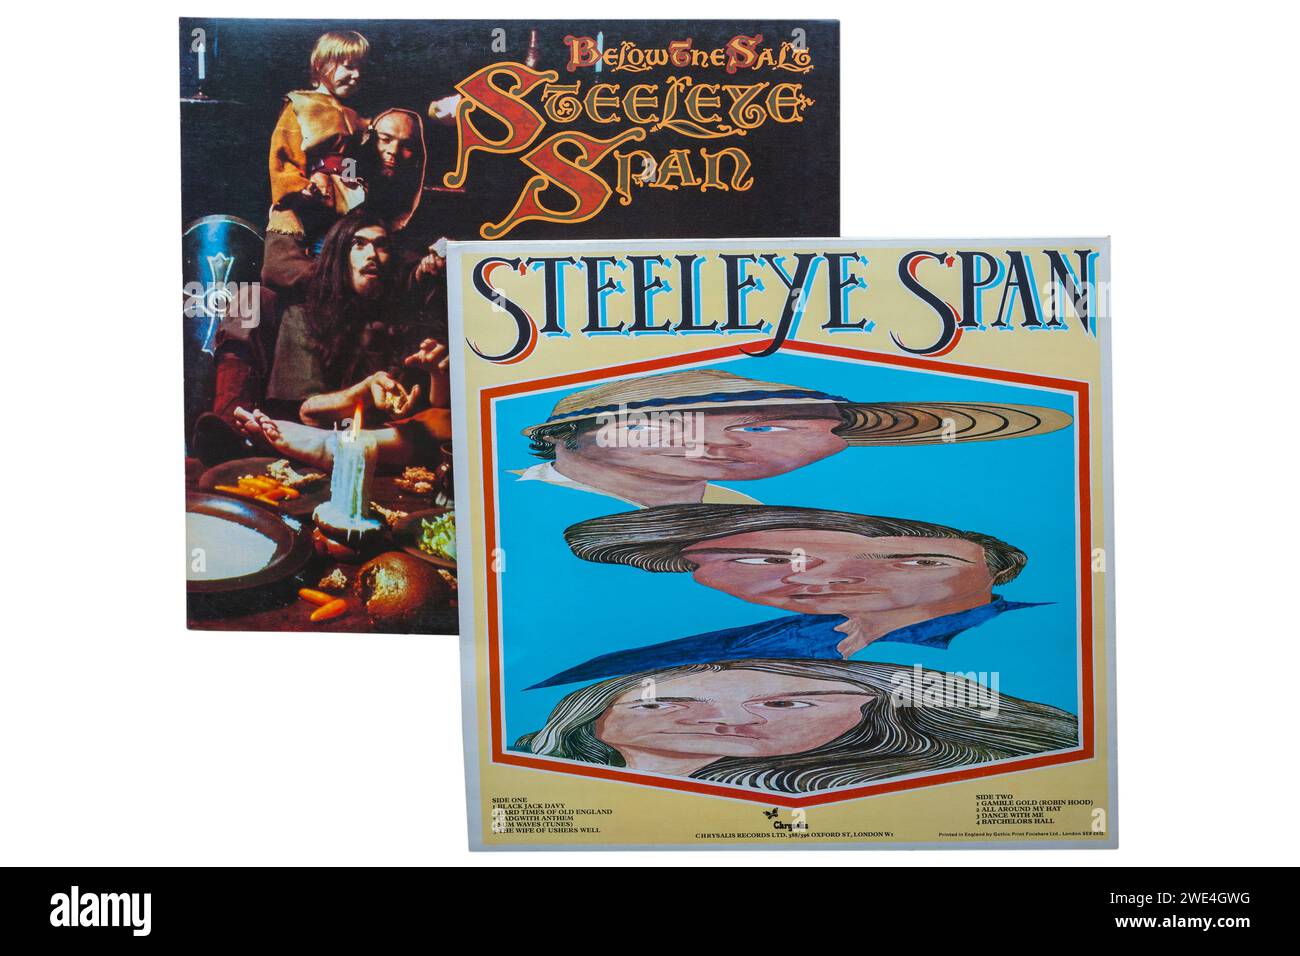 SteelEye Span All Around My hat 1975 Vinyl-Album-Cover & Under the Salt 1972 Vinyl-Album-Cover isoliert auf weißem Hintergrund Stockfoto